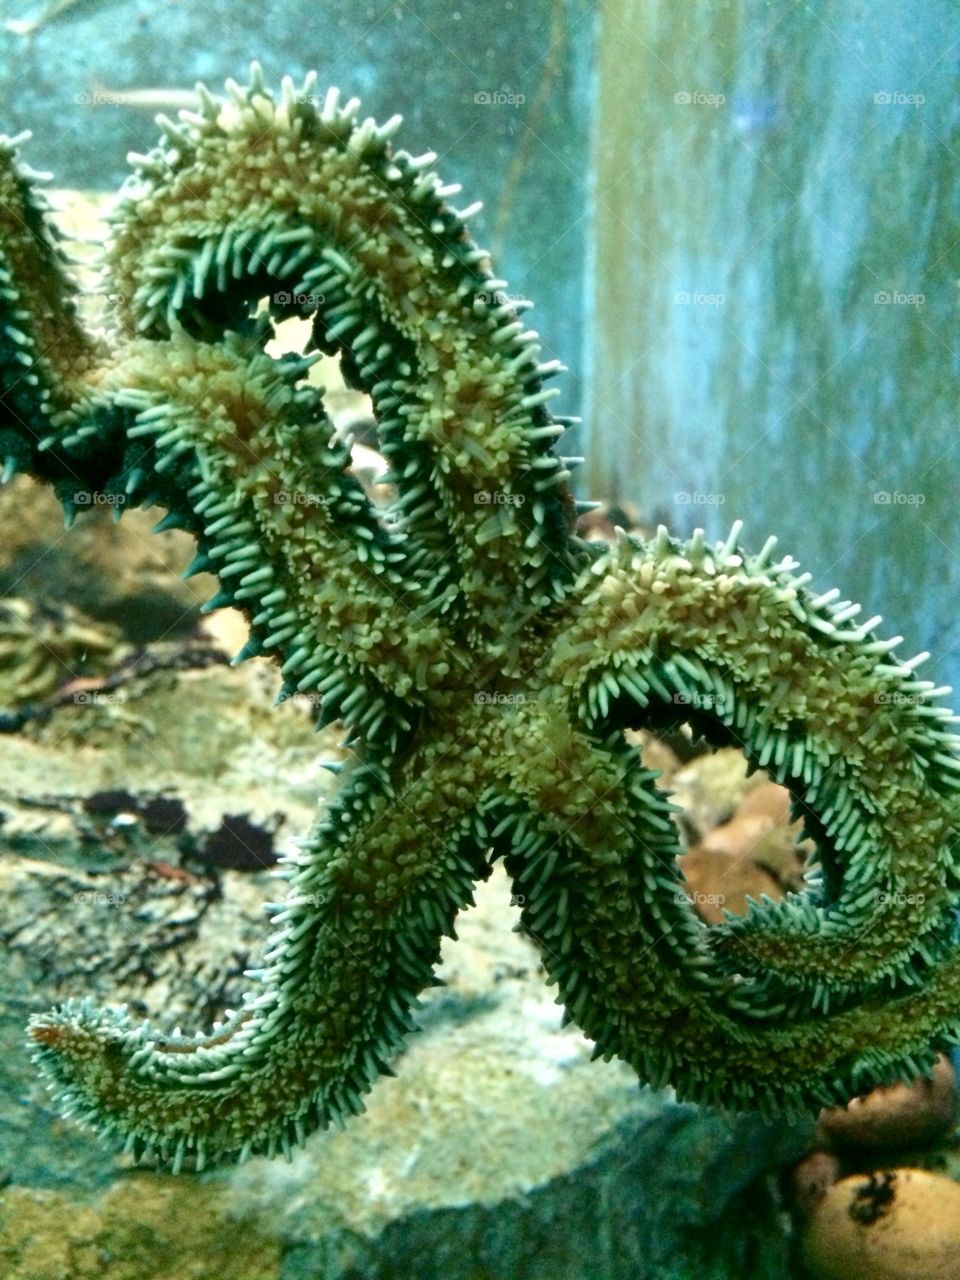 Aquarium 